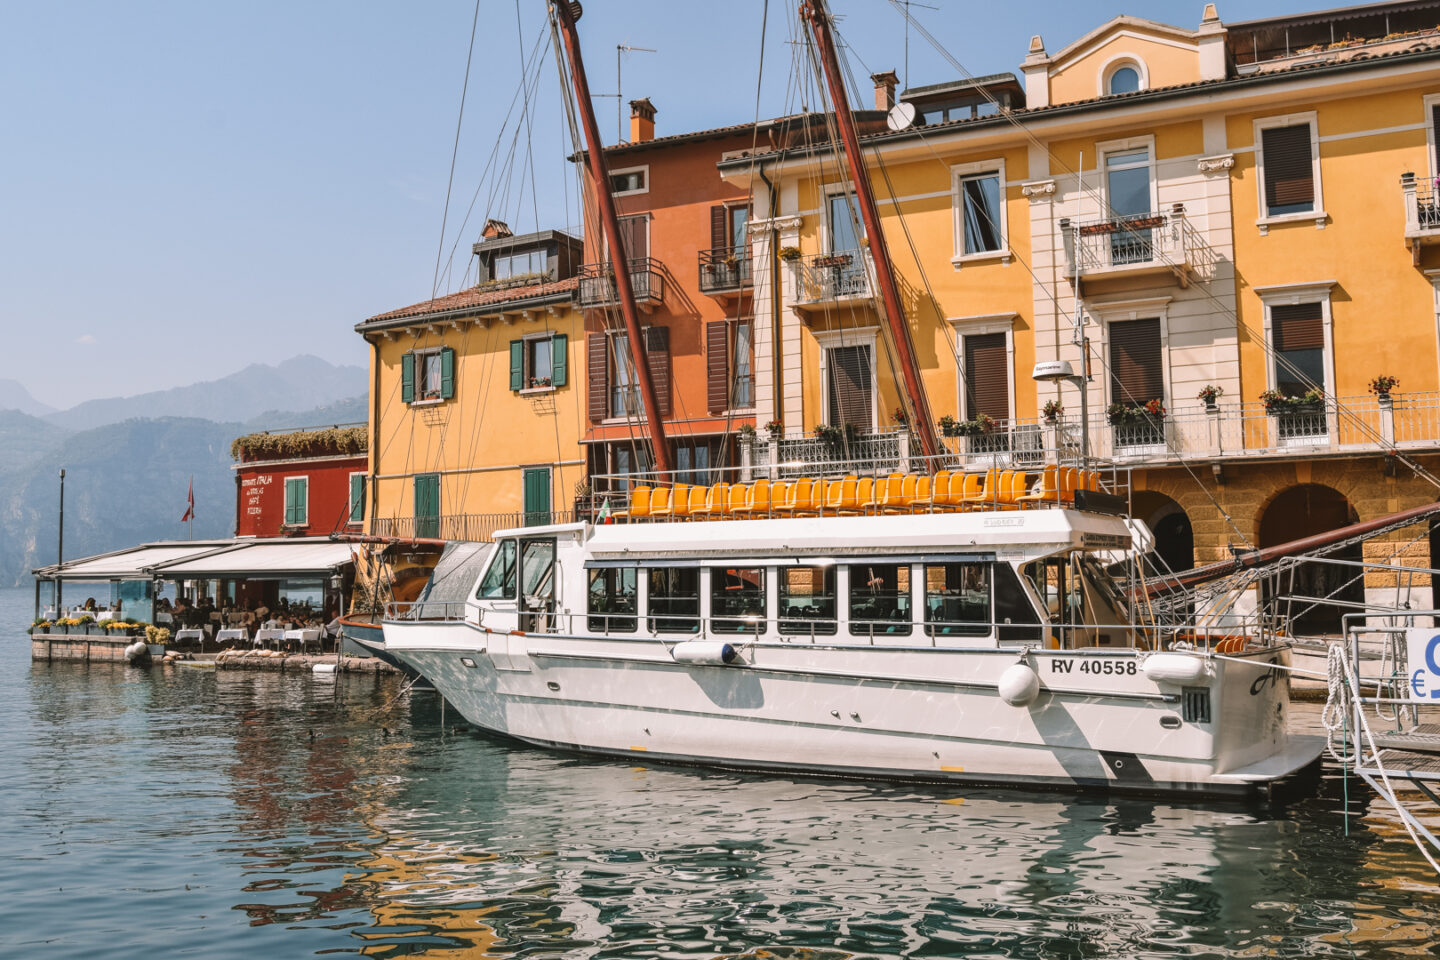 Travelling around Lake Garda by boat